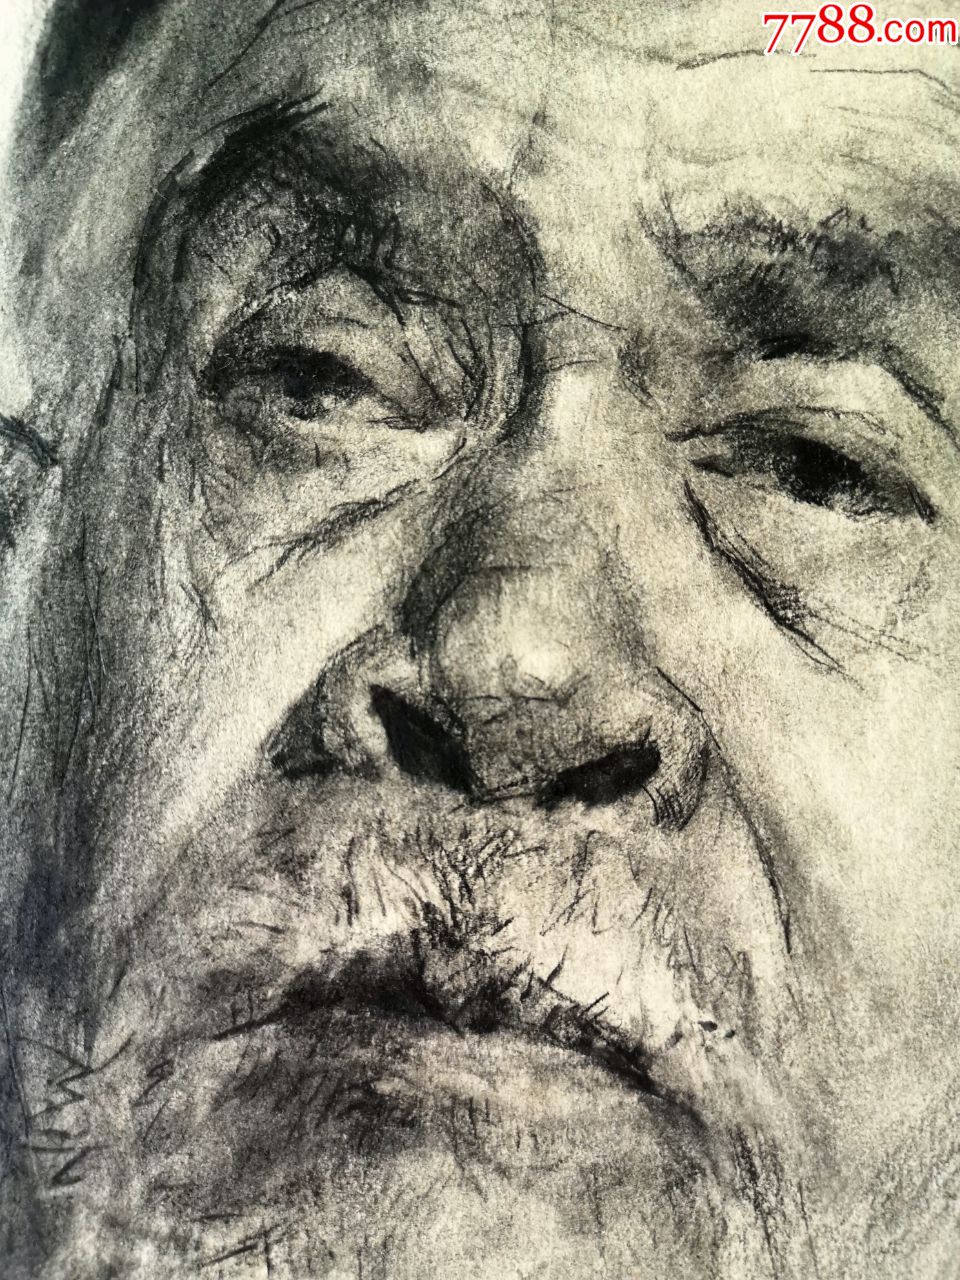 素描/速写 >> 80年代高水准木炭条手绘人物肖像素描原作《新疆老人